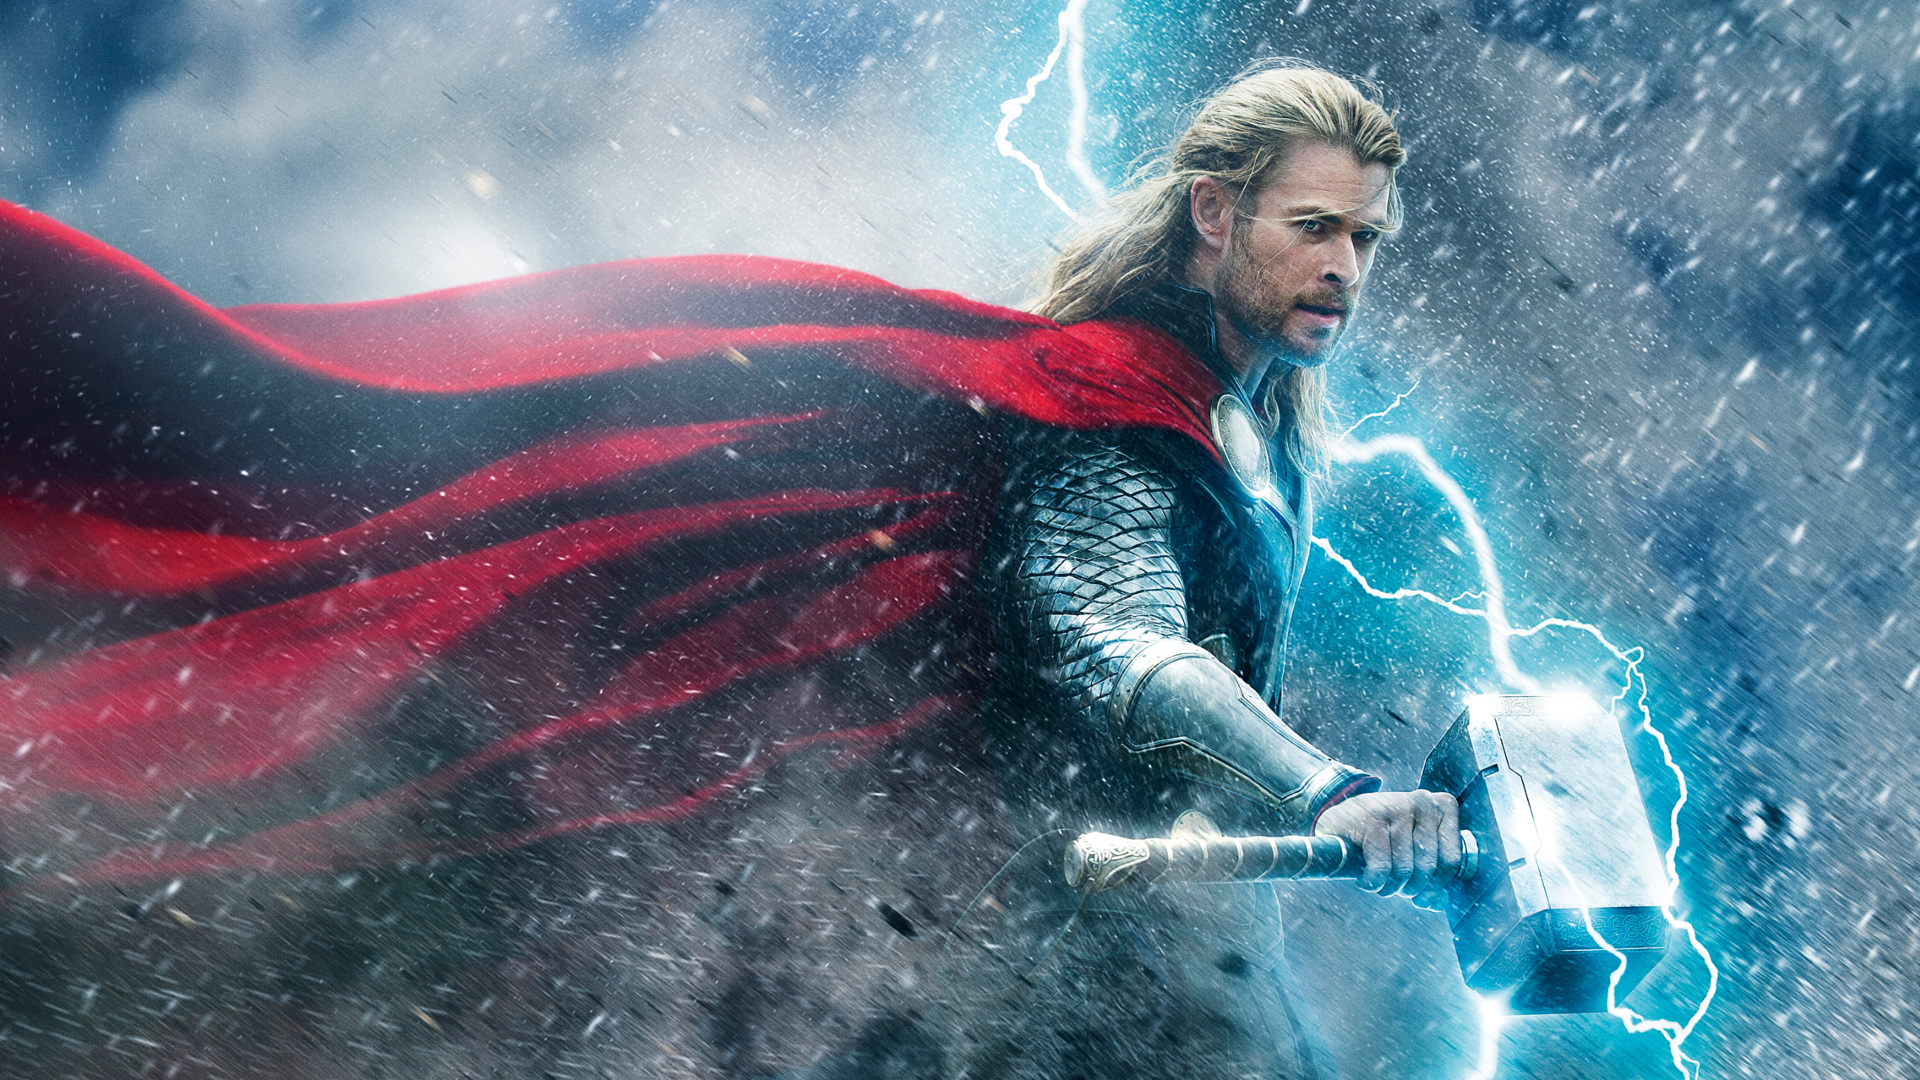 General 1920x1080 Thor Thor 2: The Dark World Thor : Ragnarok Avengers Endgame Avengers: Infinity war Avengers: Age of Ultron science fiction movie characters Mjolnir lightning Chris Hemsworth